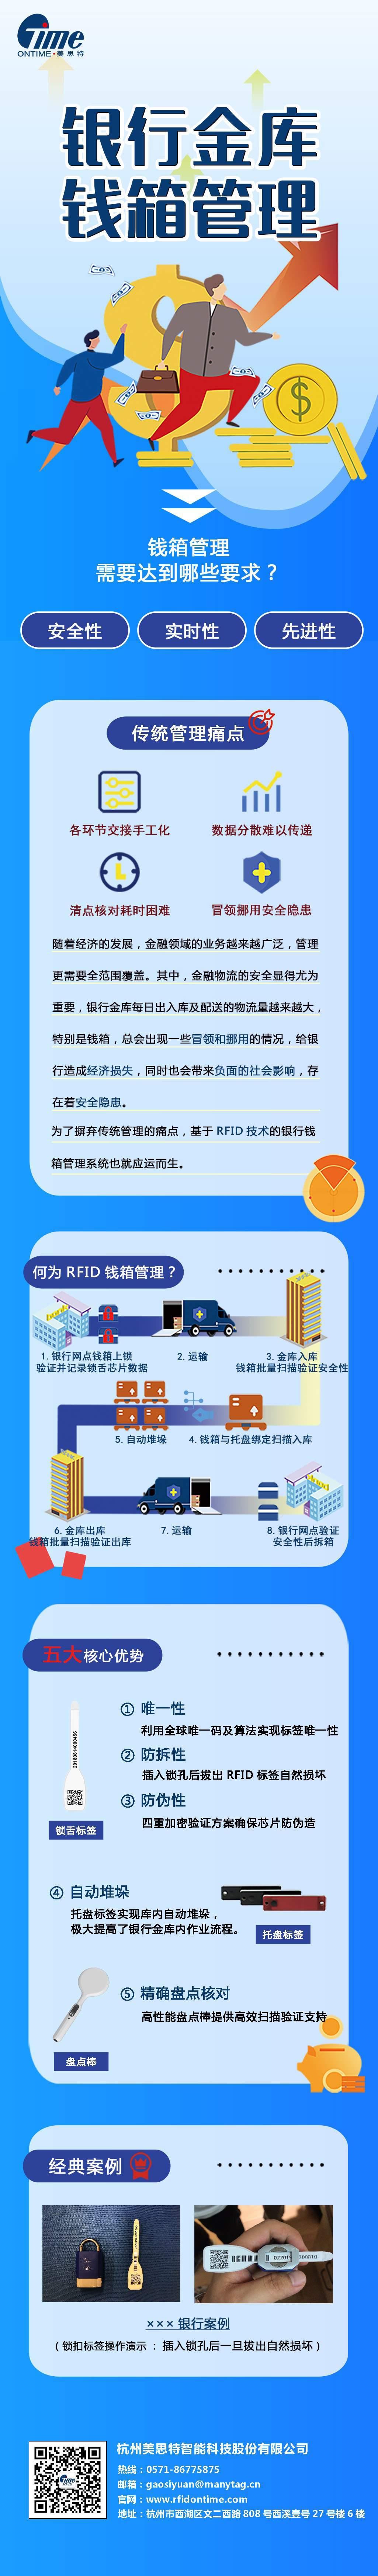 RFID银行钱箱管理解决方案图片